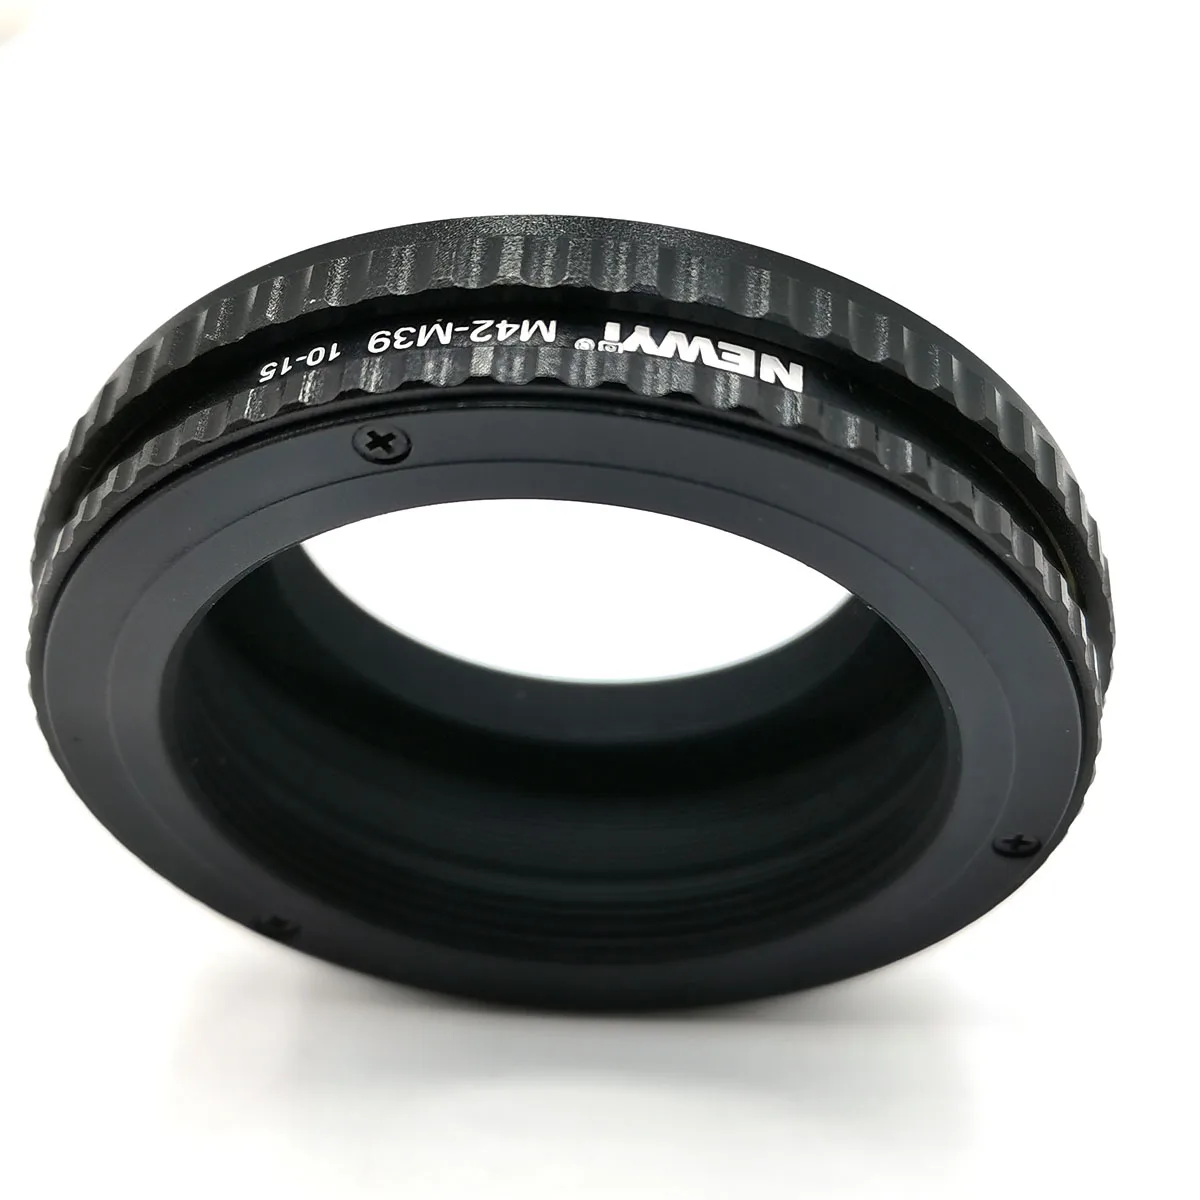 調整可能な焦点リングアダプター,m42からm39/l39マウント用,マクロ拡張チューブ,10mm 15mm,m42 m39|Lens Adapter|  - AliExpress